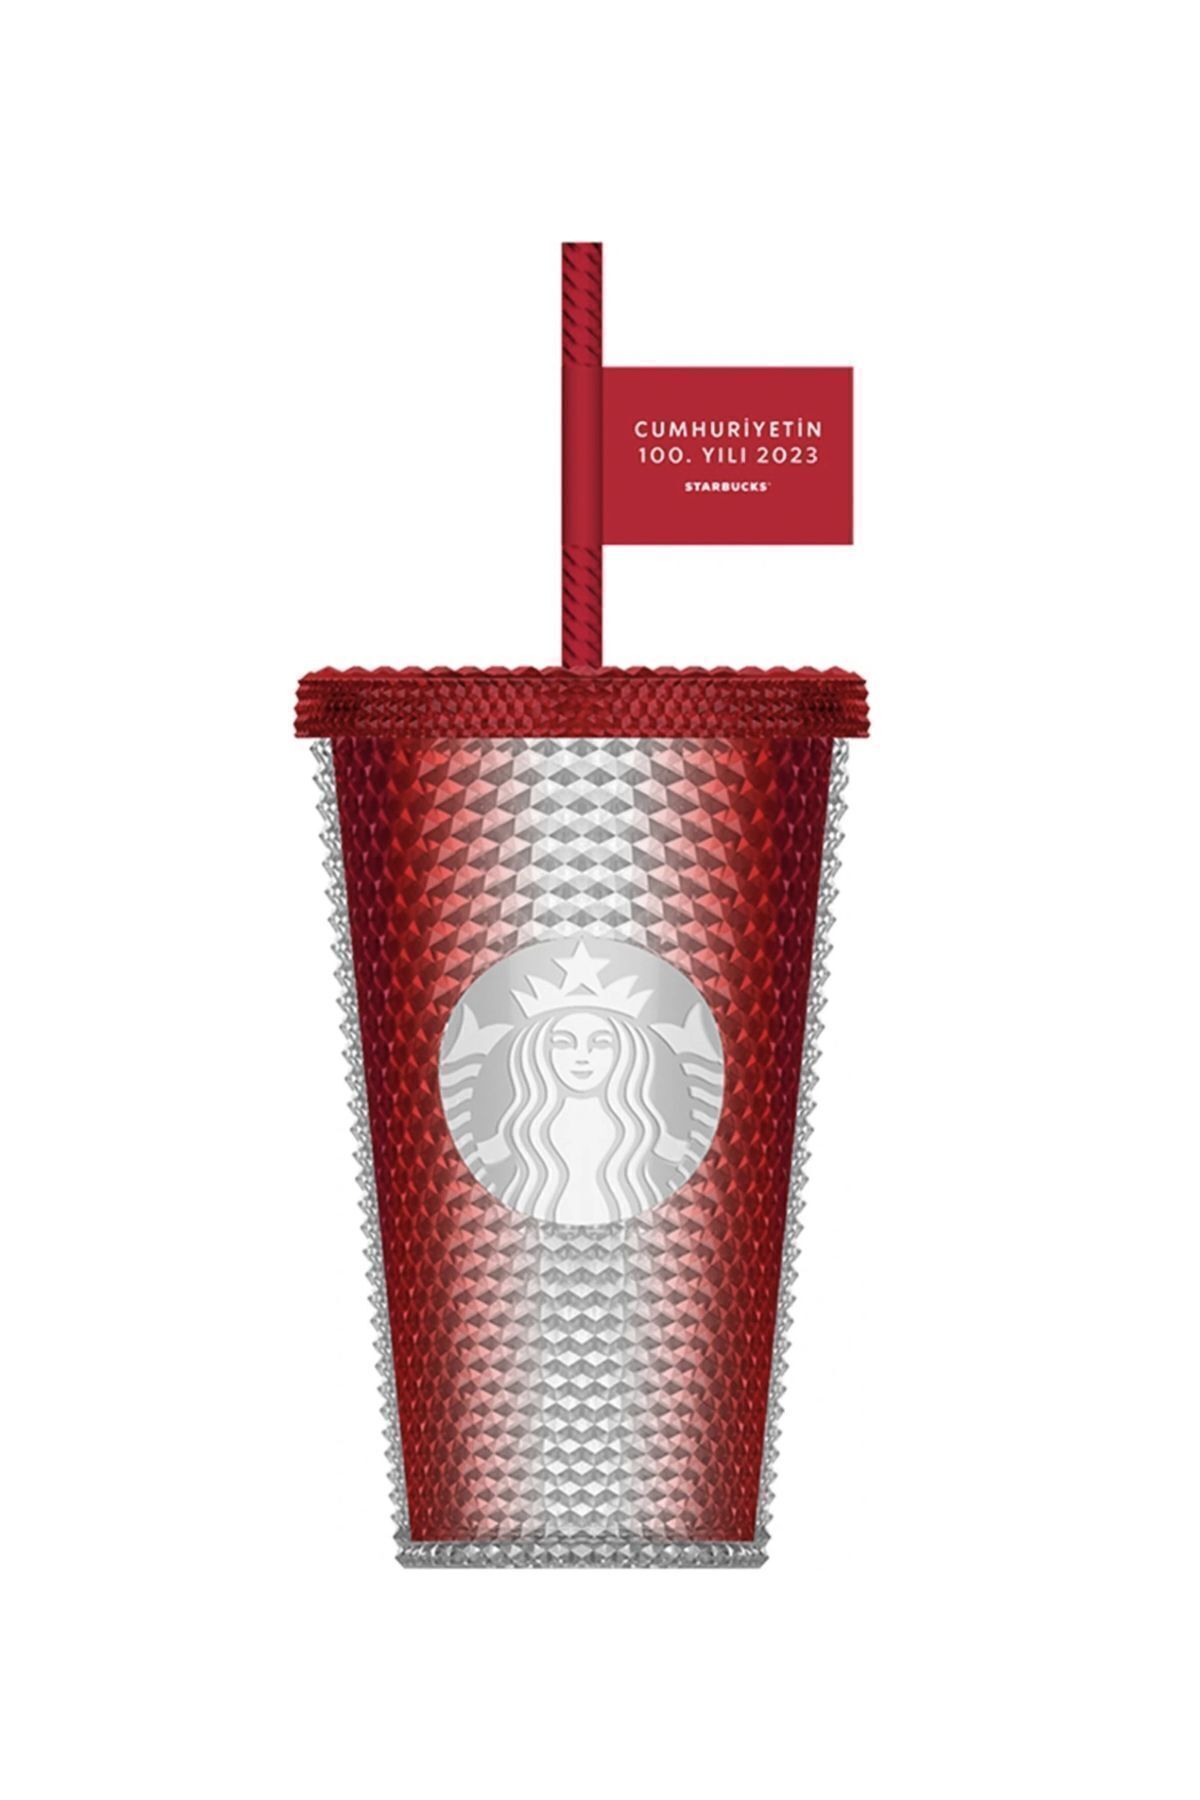 Starbucks ® 100. Yıl Özel Seri Plastik Soğuk Içecek Bardağı - Kırmızı - 473 ml -